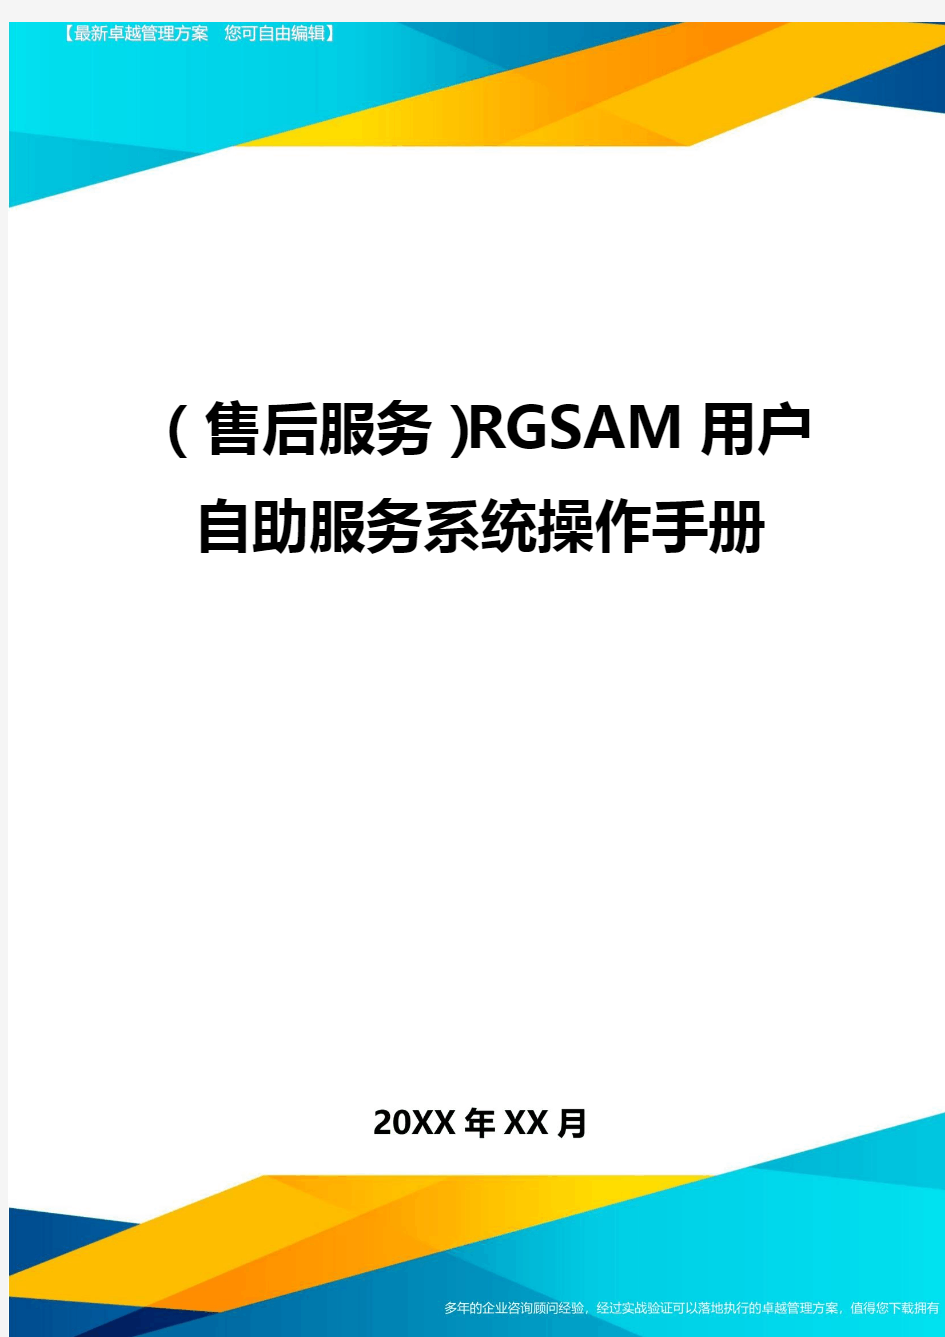 (售后服务)RGSAM用户自助服务系统操作手册